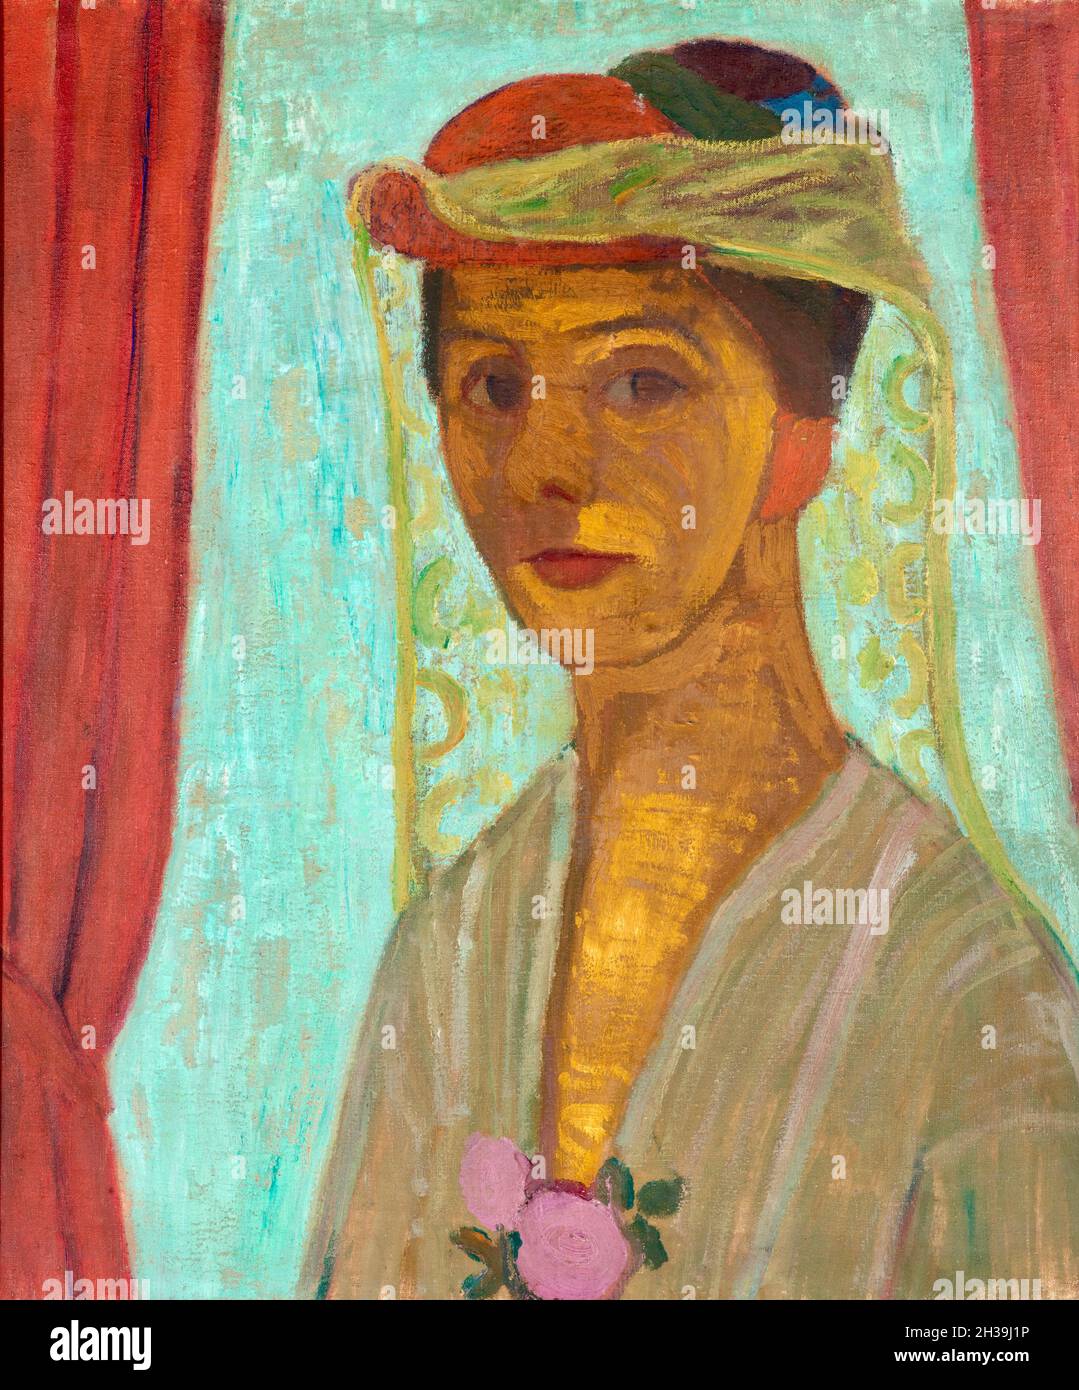 Autoritratto con cappello e velo - artista tedesco Paula Modissohn-Becker - 1906-1907 Foto Stock